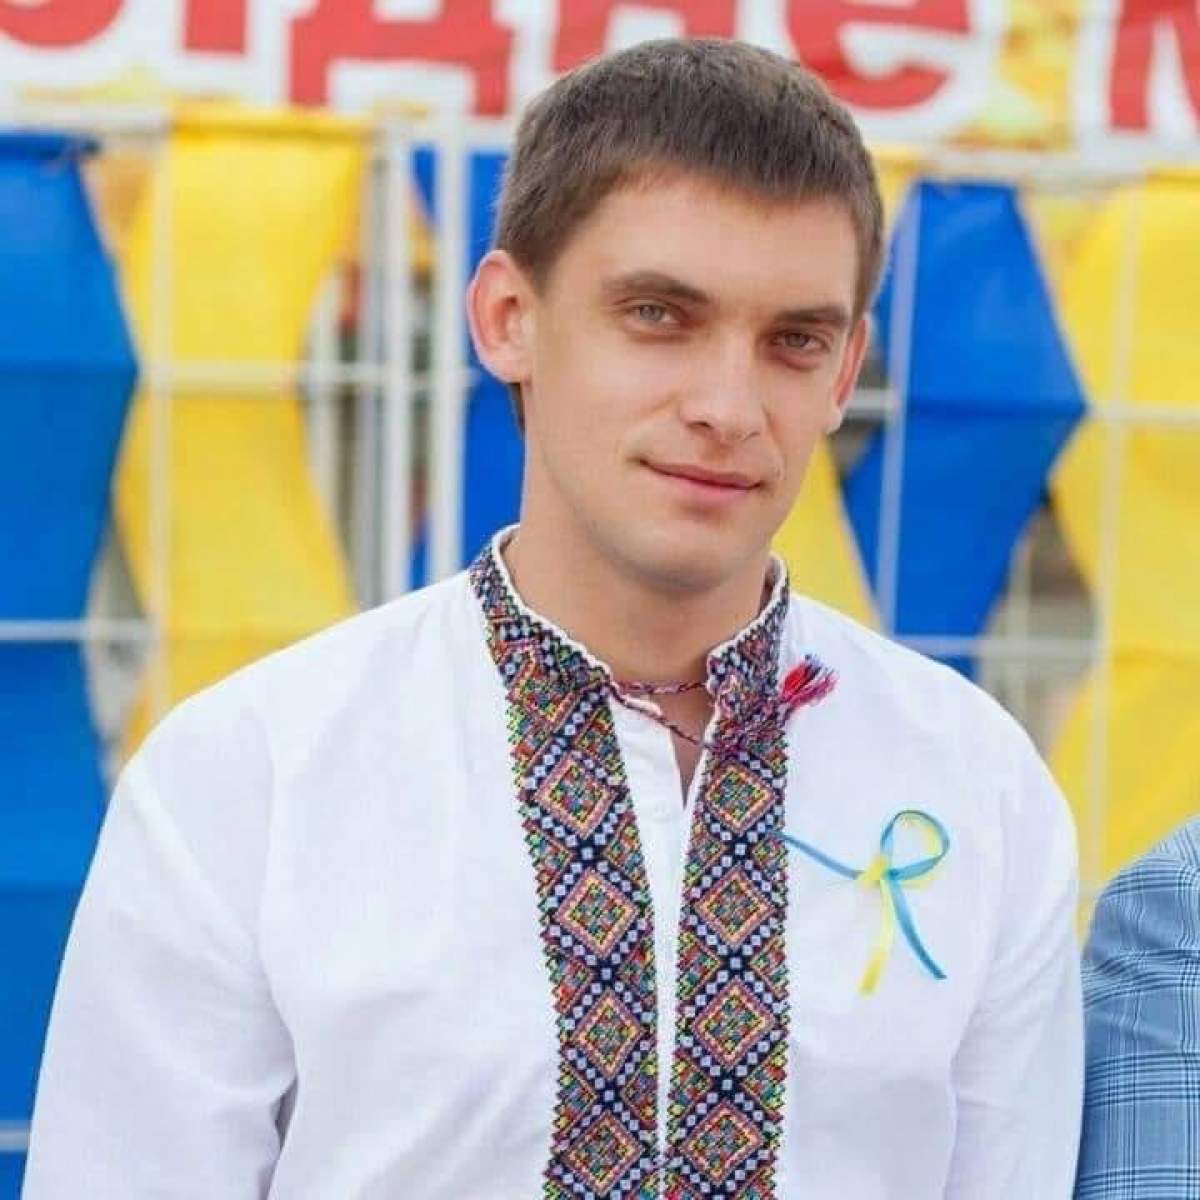 Primarul ucrainean din Melitopol, Ivan Fedorov, a fost răpit de soldații ruși. Edilul ar fi refuzat să coopereze cu invadatorii